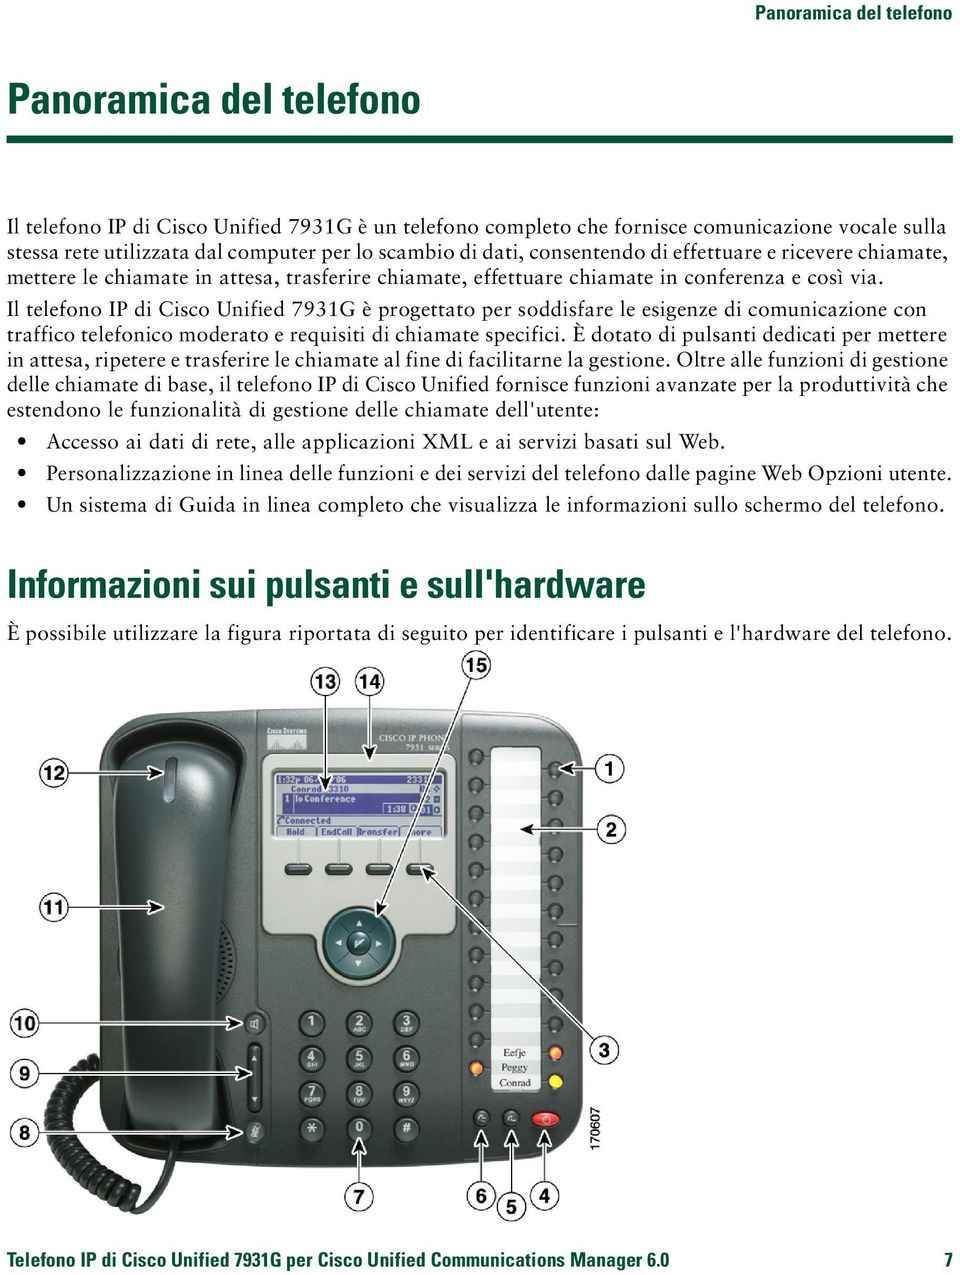 Il telefono IP di Cisco Unified 7931G è progettato per soddisfare le esigenze di comunicazione con traffico telefonico moderato e requisiti di chiamate specifici.